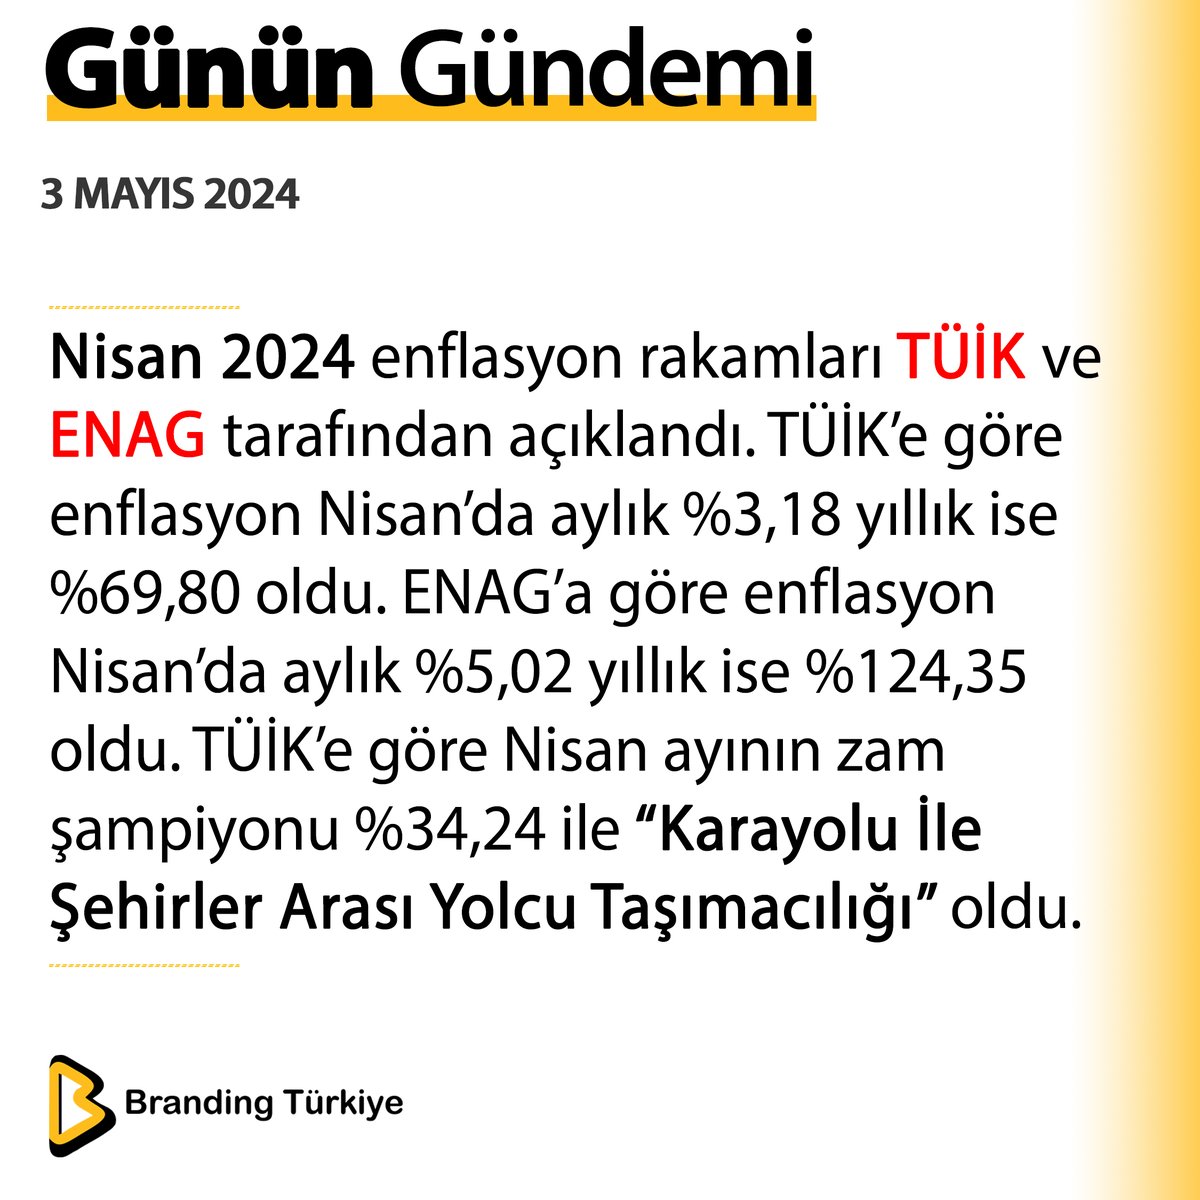 #3Mayıs2024

Nisan 2024 enflasyon rakamları TÜİK ve ENAG tarafından açıklandı. 

▶ brandingturkiye.com
#BrandingTürkiye #Haberler #TÜİK #ENAG #Enflasyon #ZamŞampiyonu #Ekonomi #SonDakika #EnflasyonRakamları #Zam #Ulaşım